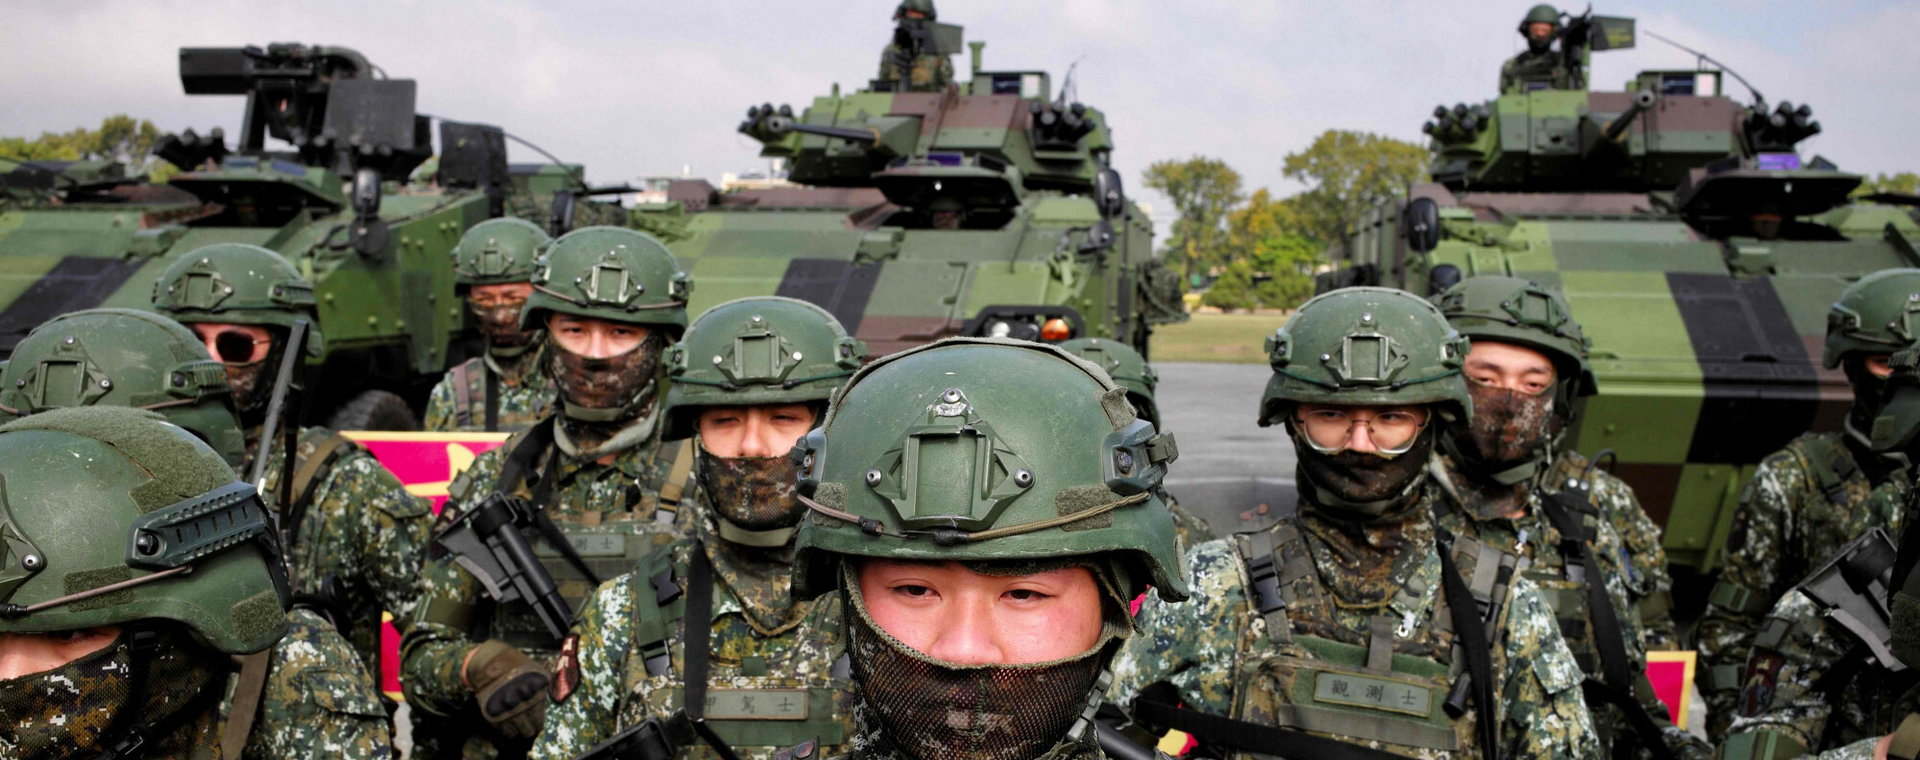 Tajwańscy żołnierze odpowiadają za ochronę wyspy.